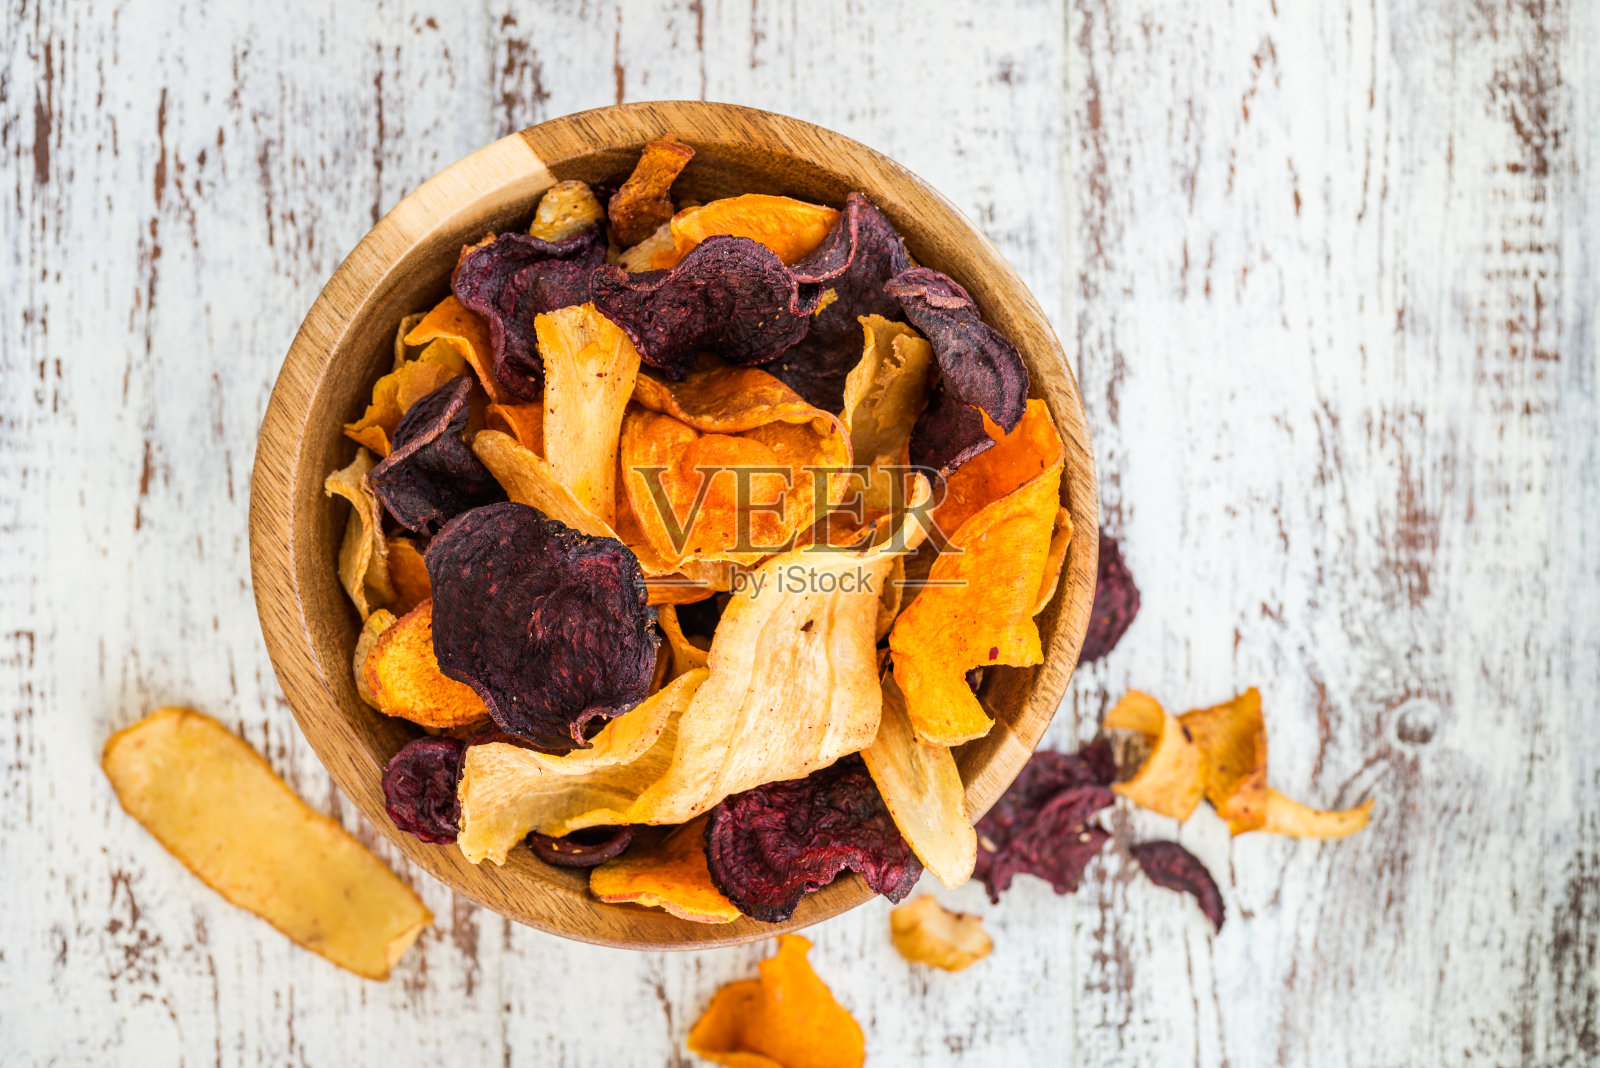 一碗由蔬菜薯条、薯片组成的健康零食照片摄影图片